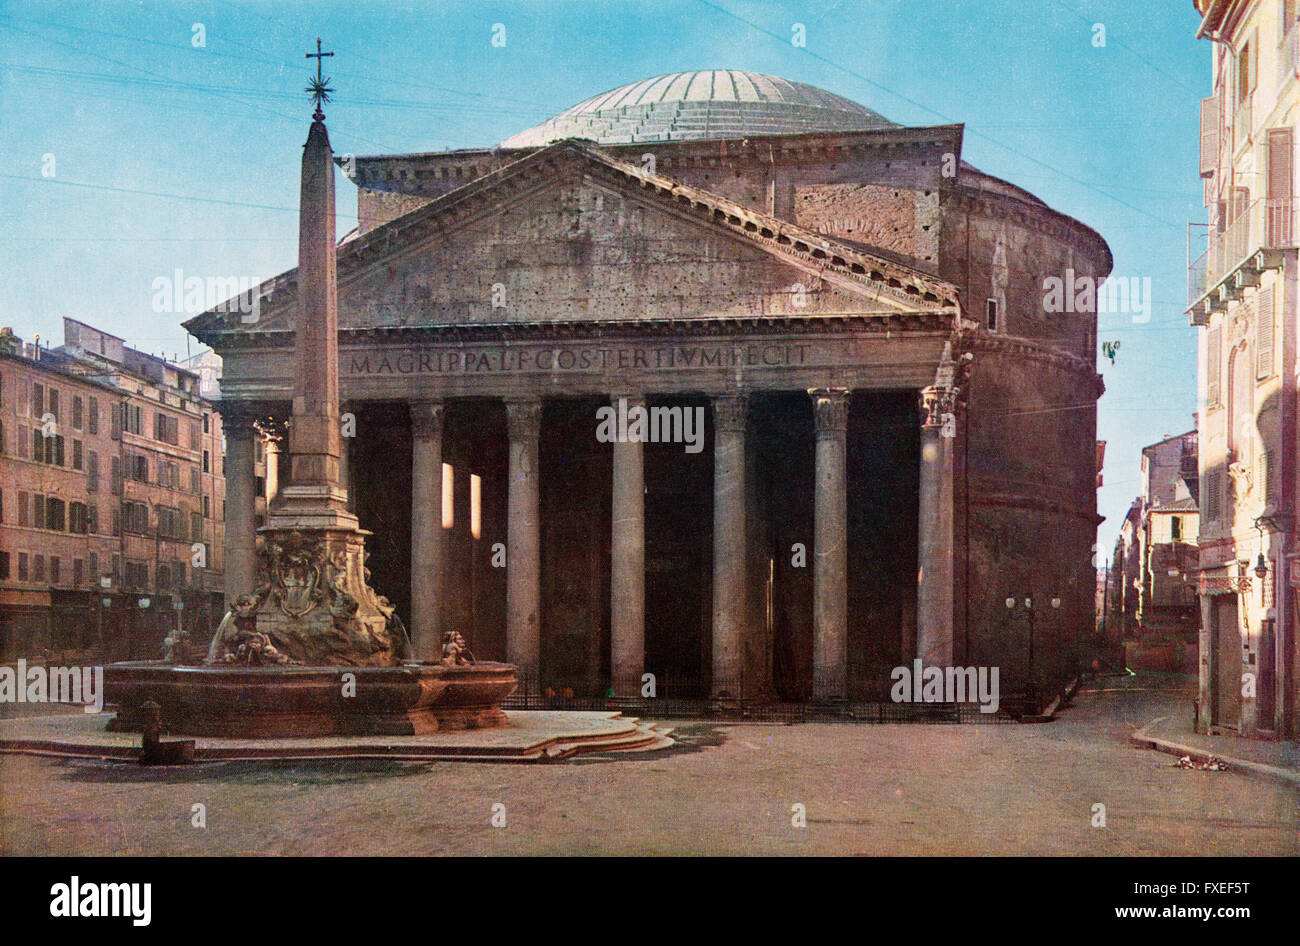 Das Pantheon in der Piazza della Rotonda, Rom, Italien.  Foto vom Anfang des 20. Jahrhunderts. Stockfoto